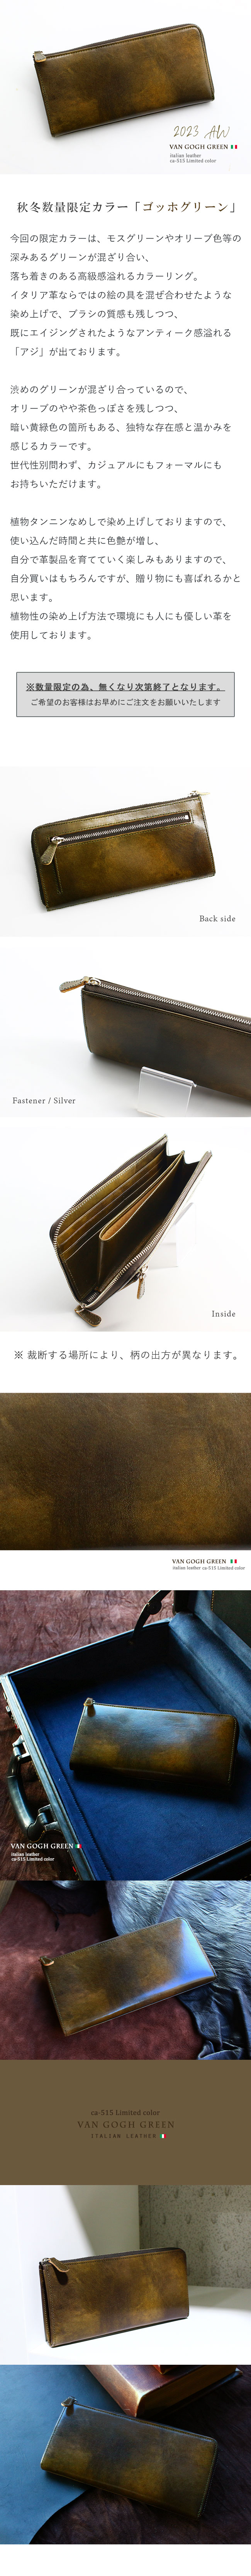 【新品割引中】leather-g　レザージー　イタリアンレザー長財布